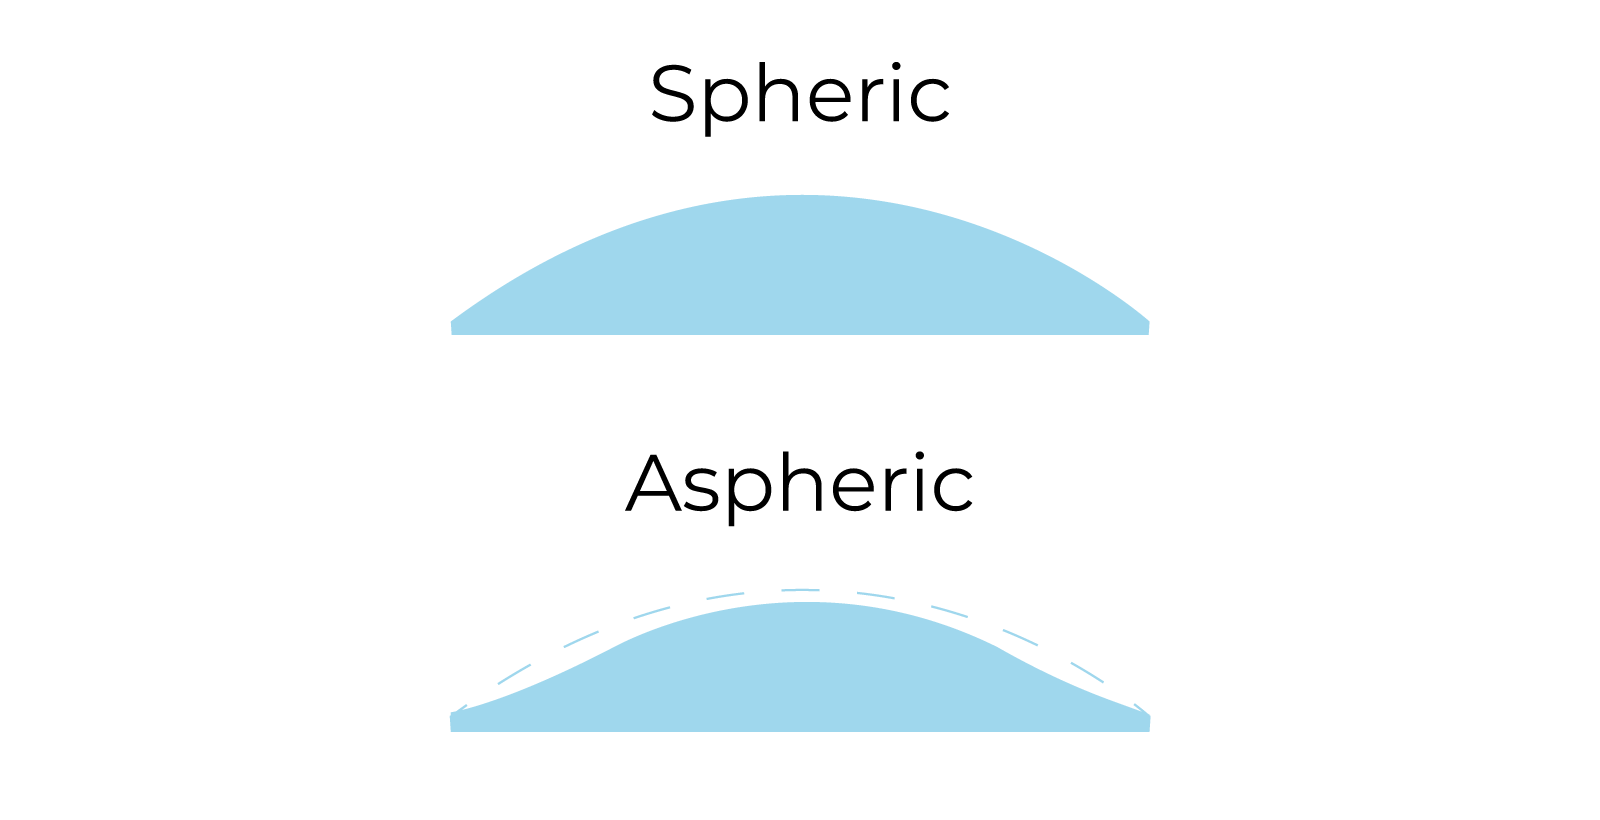 Side on view of spheric vs aspheric glasses lenses